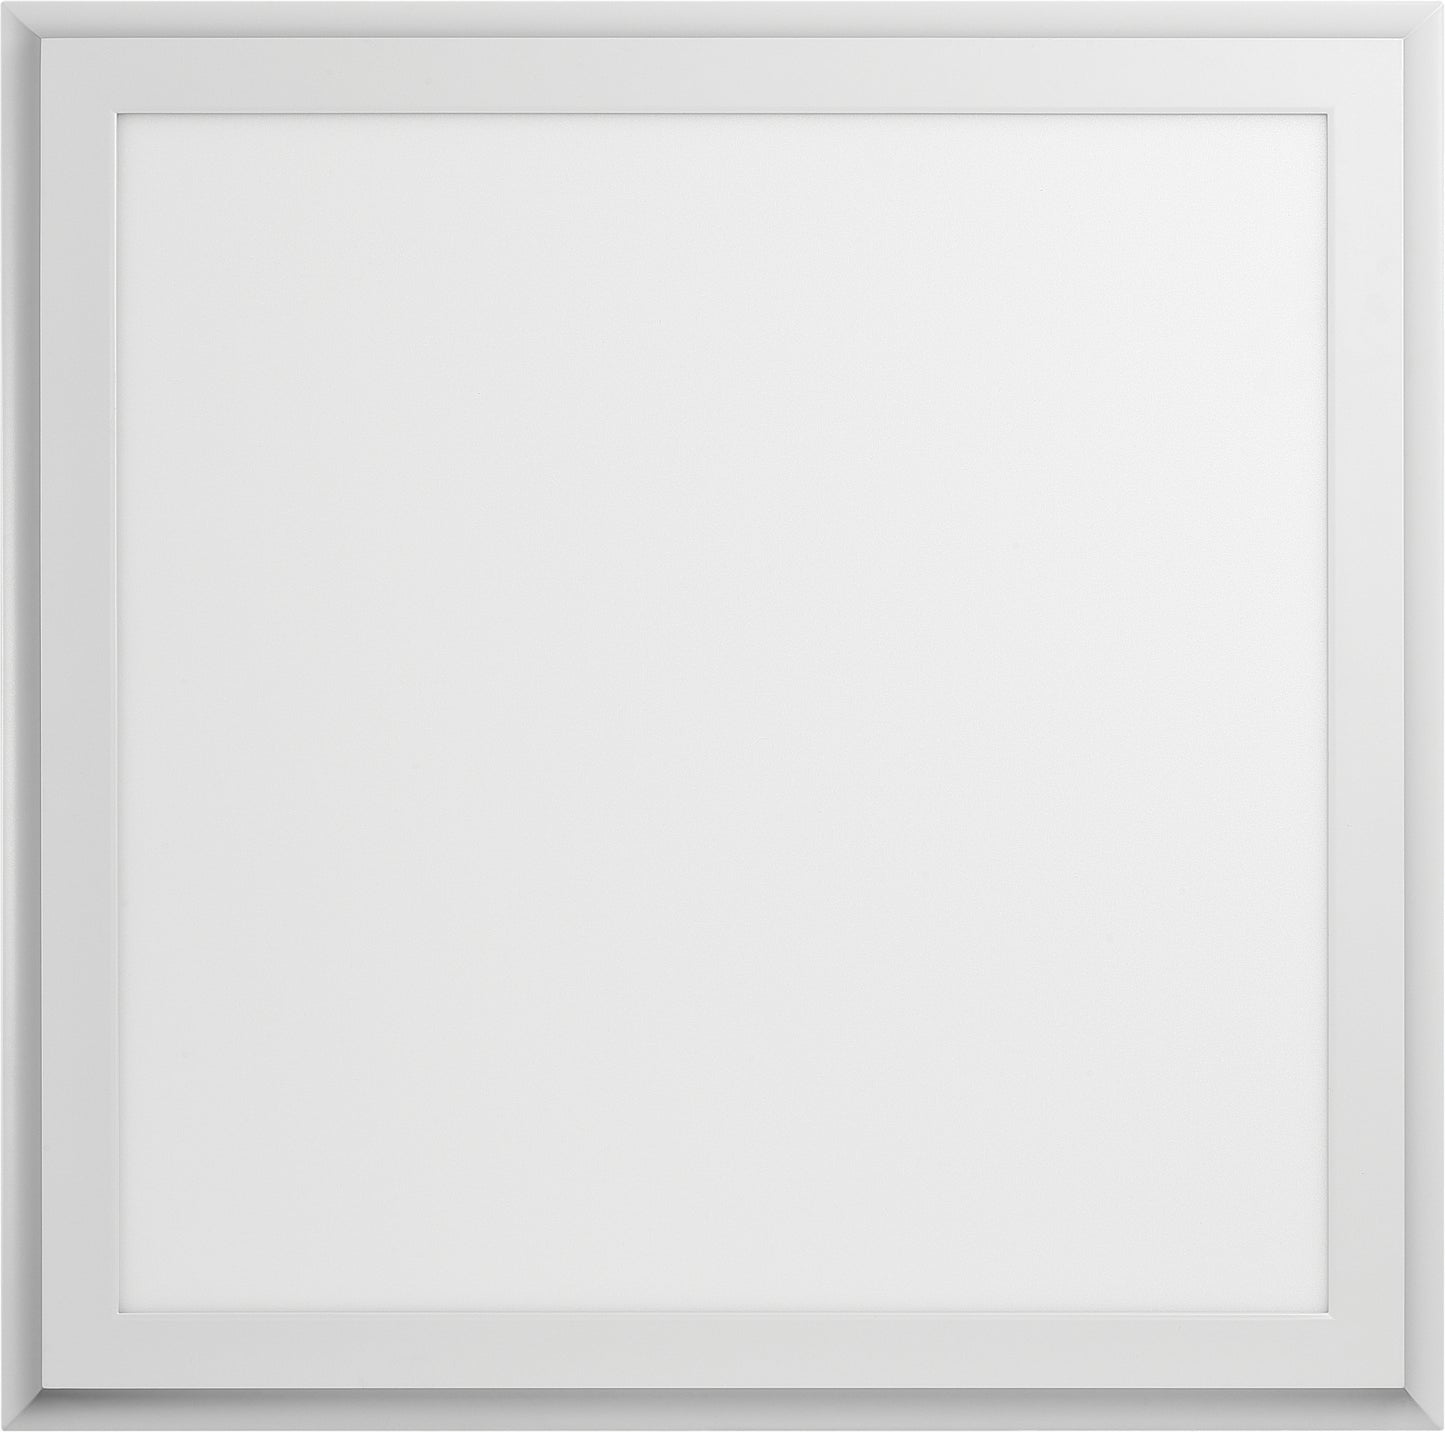 Blink Plus Profile - 24" x 24" Surface Mount 45W LED - 4000K - White Finish